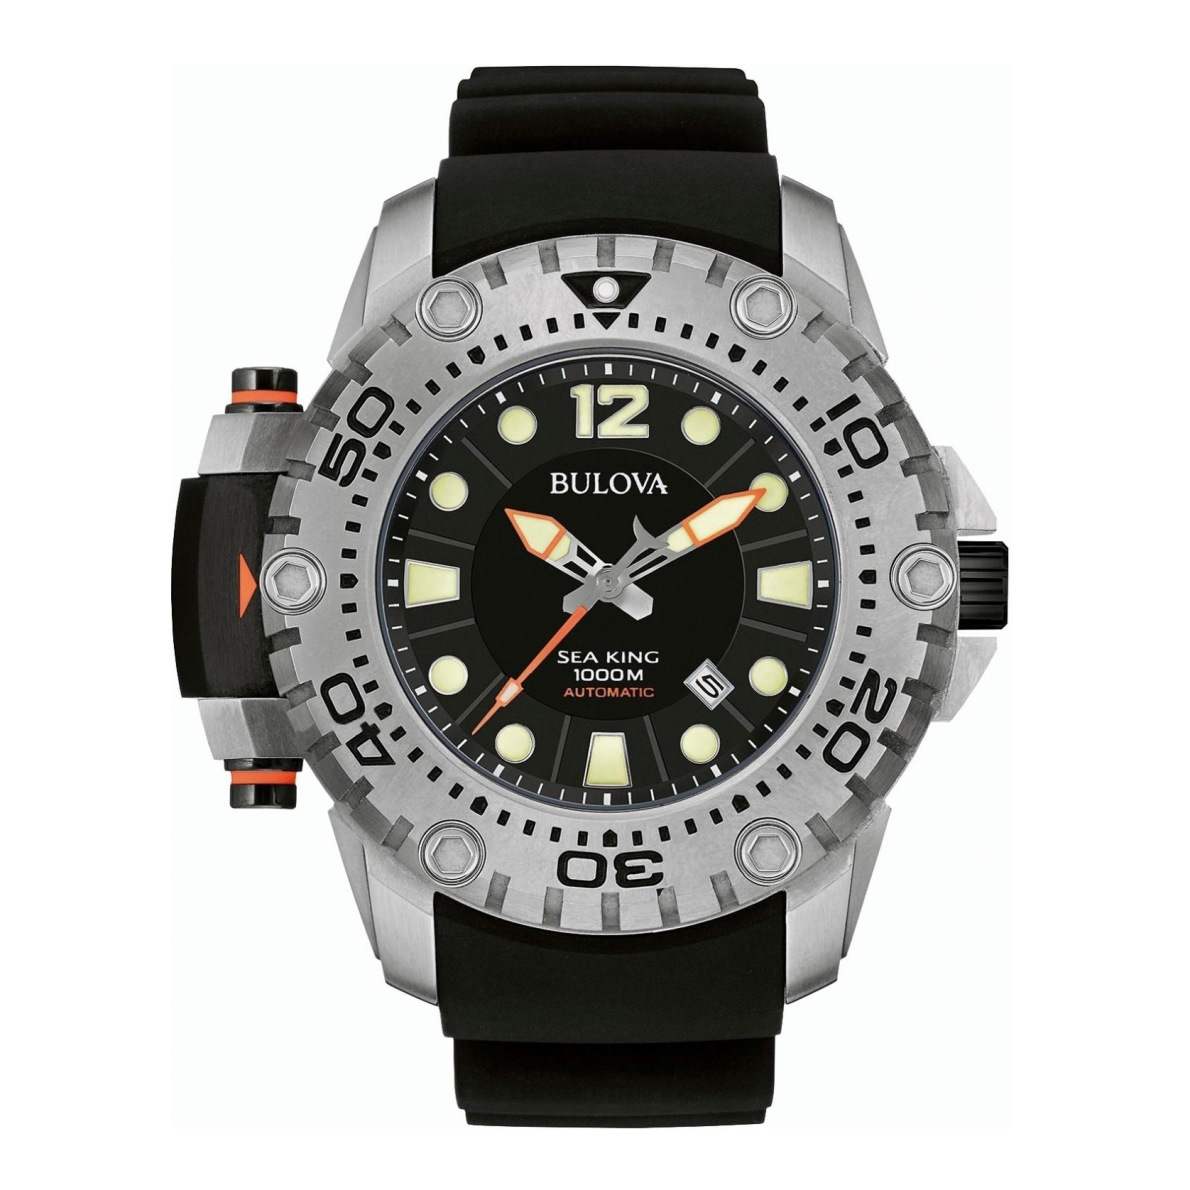 Sea King – Mẫu đồng hồ dành cho thợ lặn có thiết kế mạnh mẽ, đậm chất thể thao.